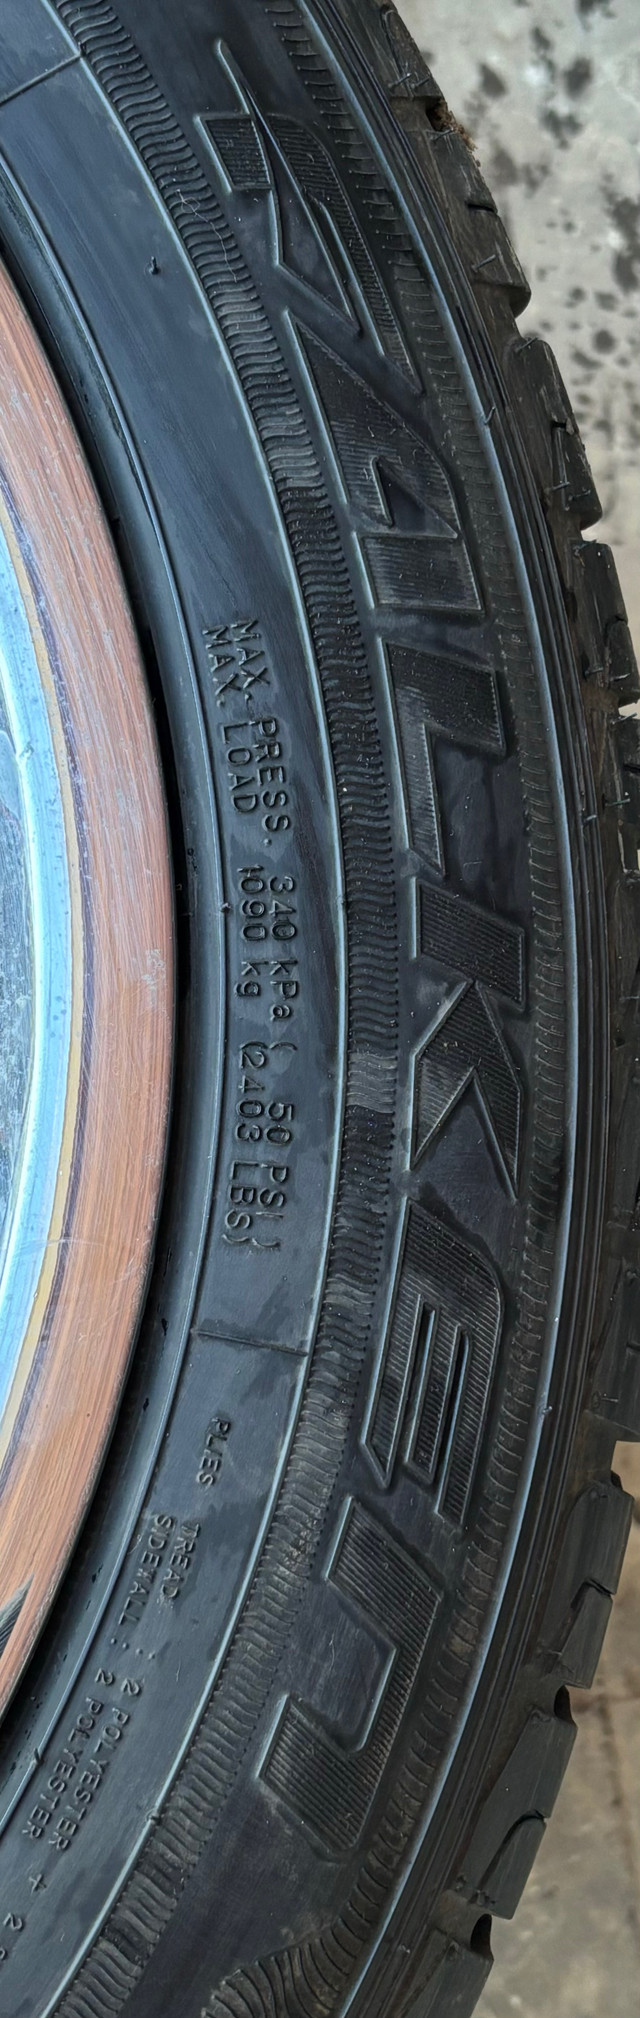 265/50/20  in Tires & Rims in Brantford - Image 3